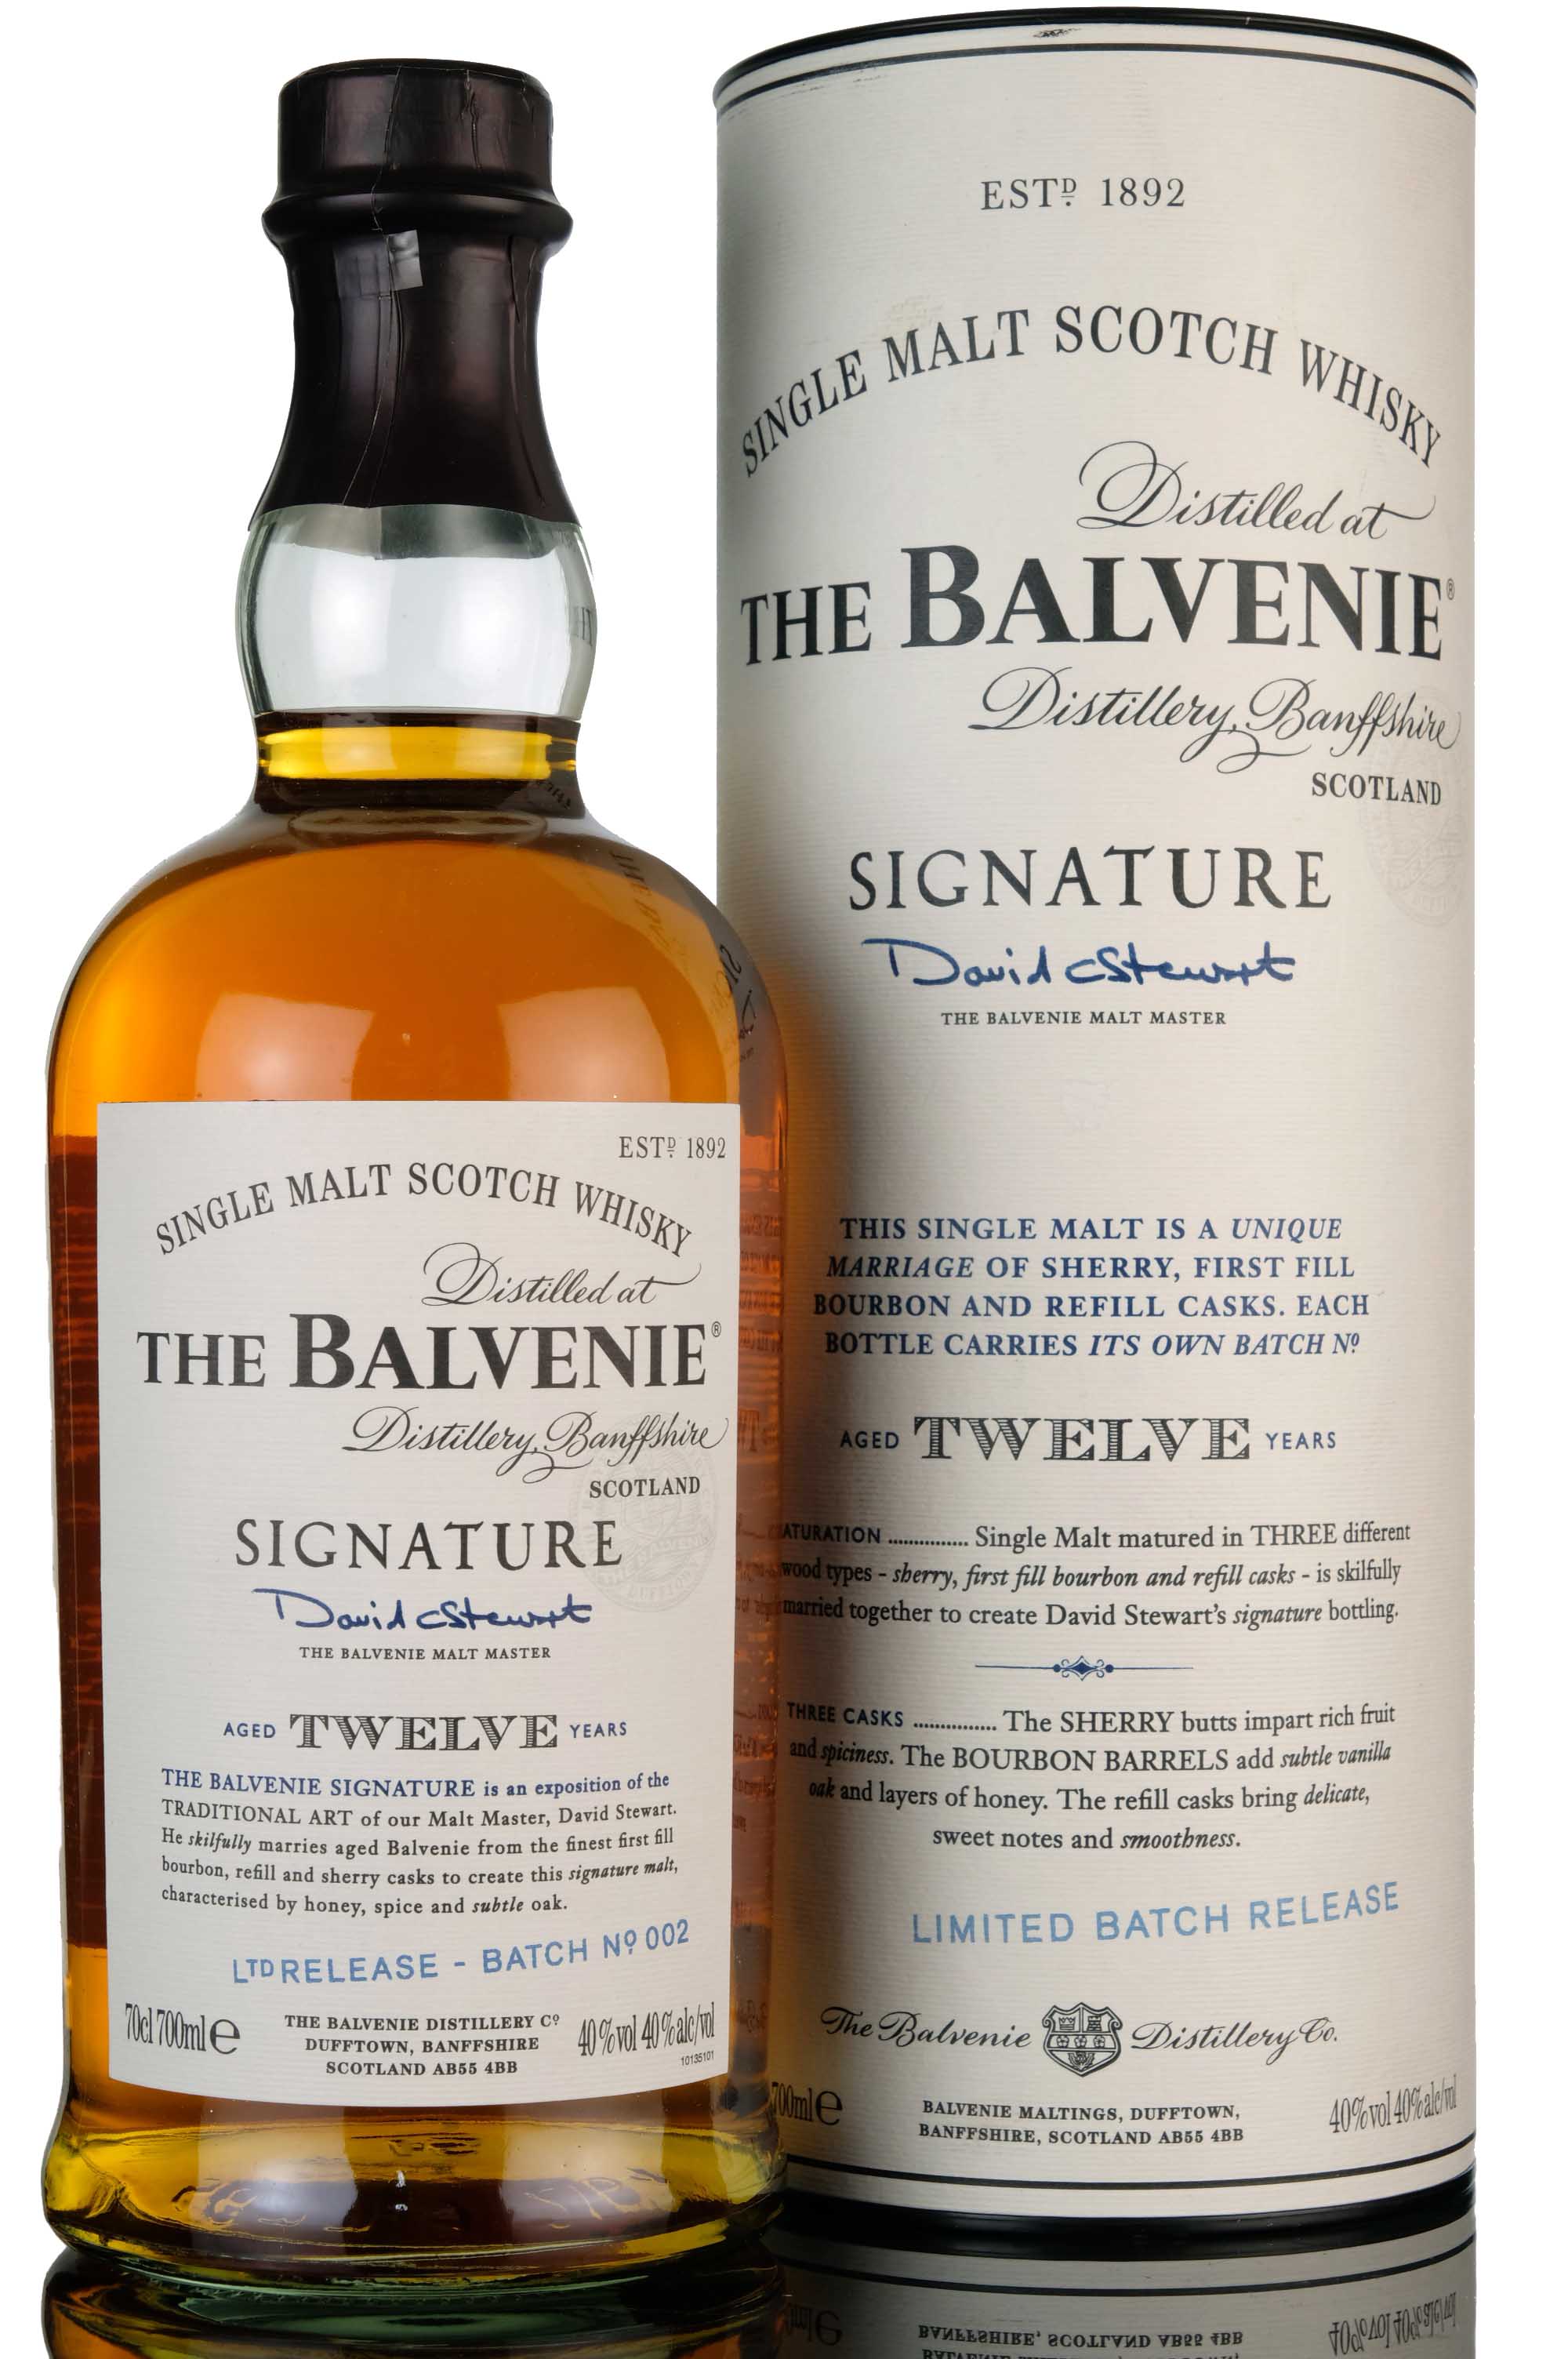 Balvenie 12 Year Old - Signature - Batch 2 - 2009 Release